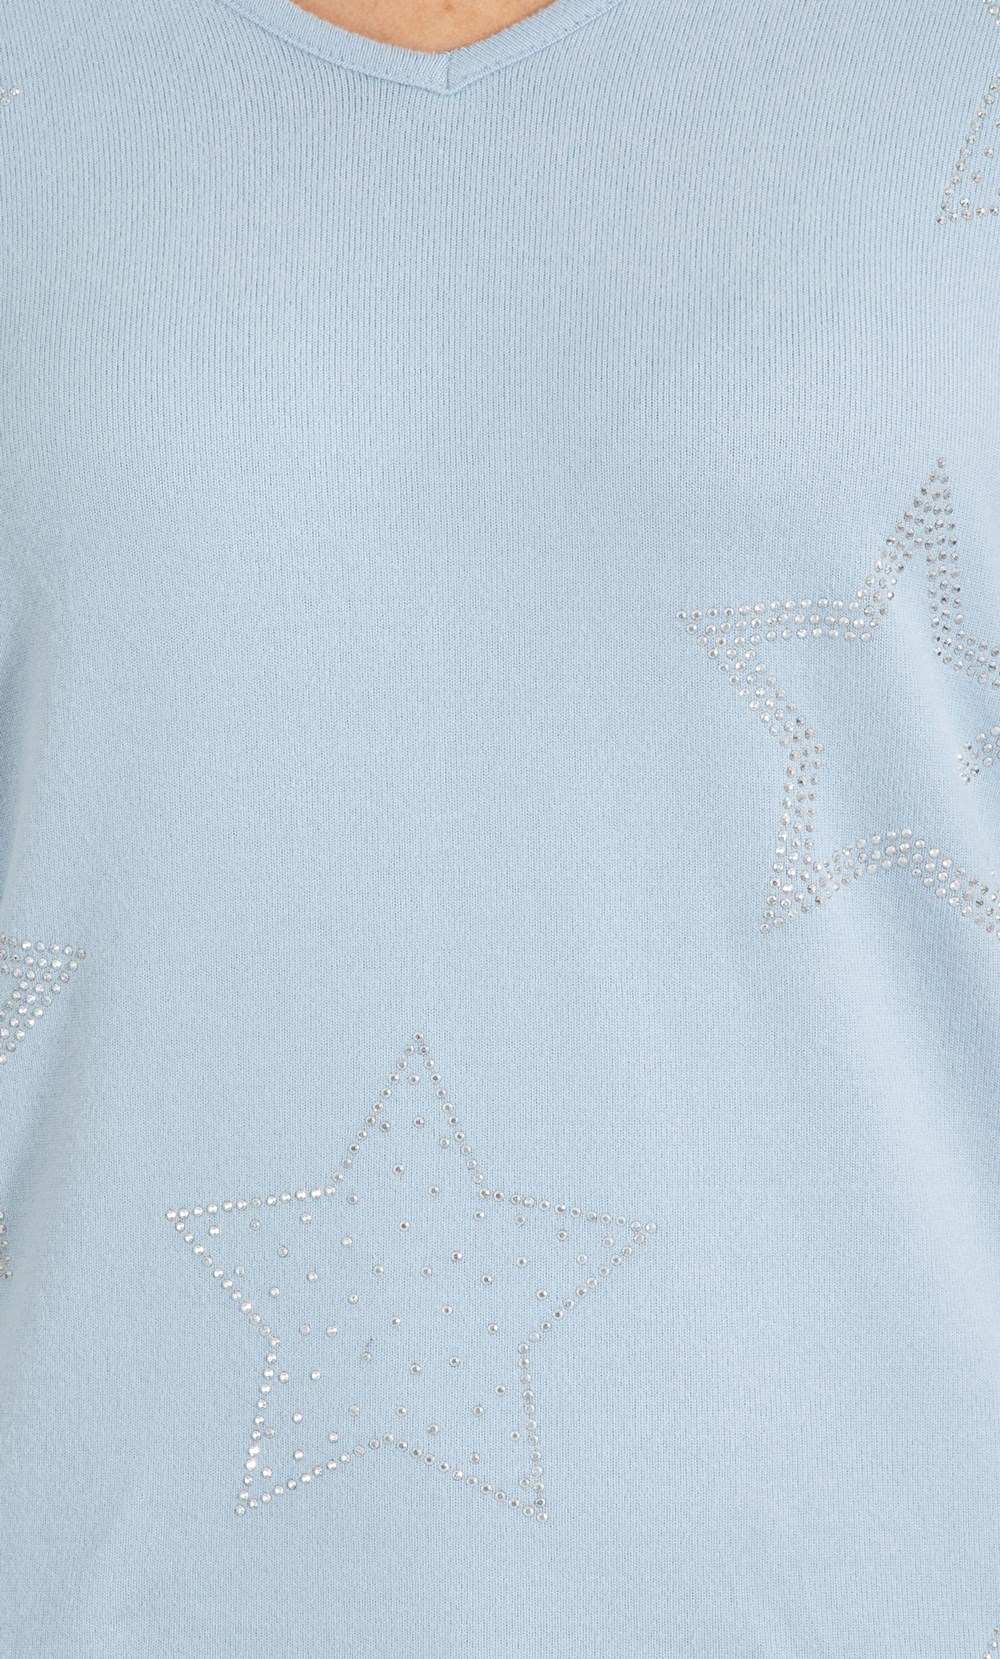 Super Soft Brushed Knit Embellished Star Lounge Top